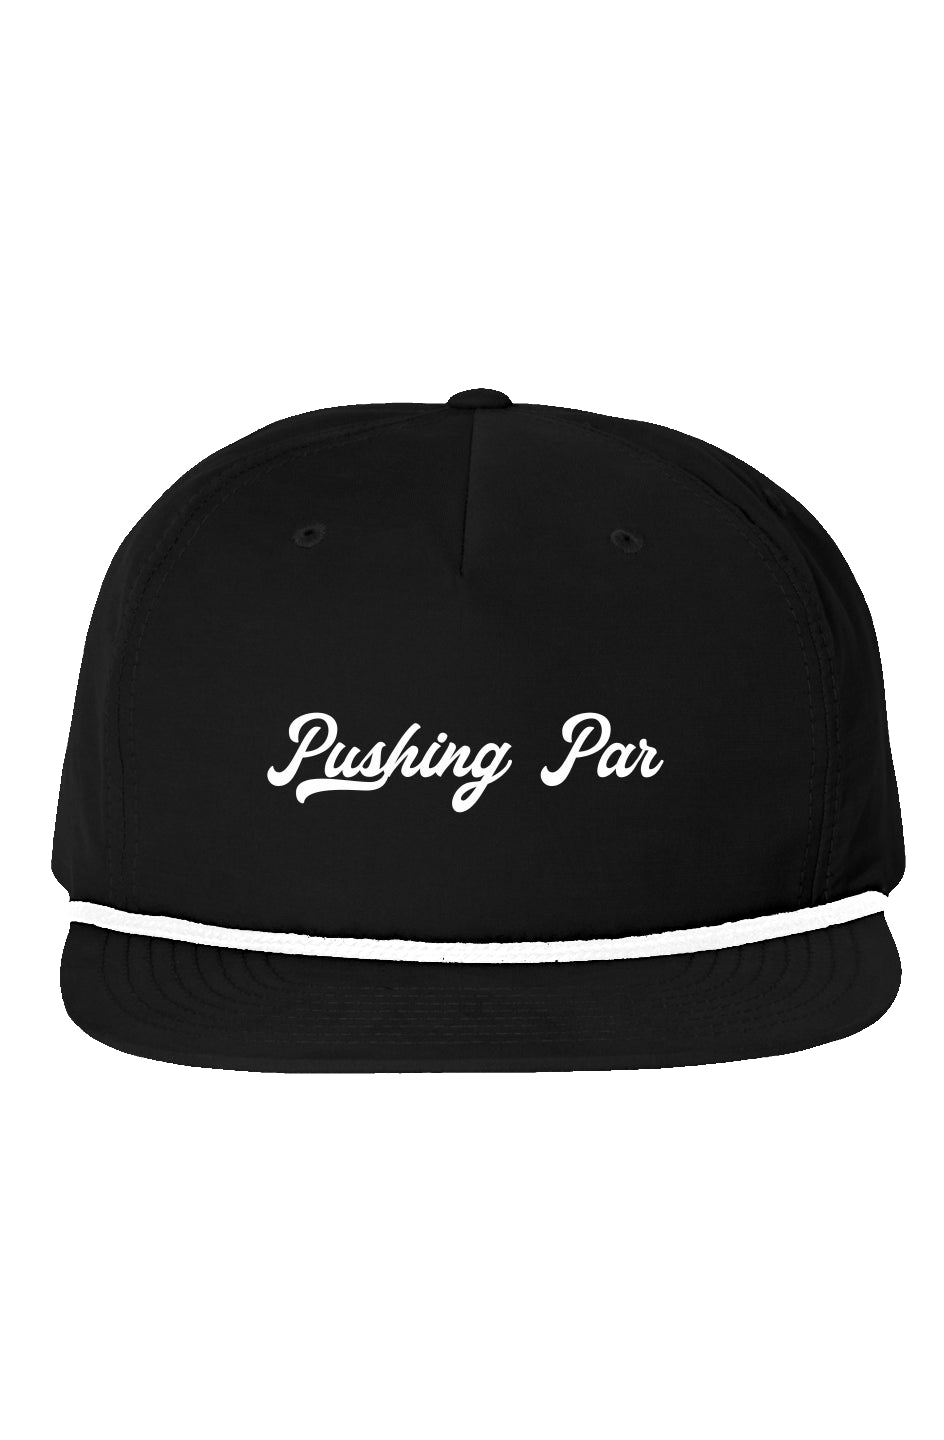 Pushing Par Rope Hat